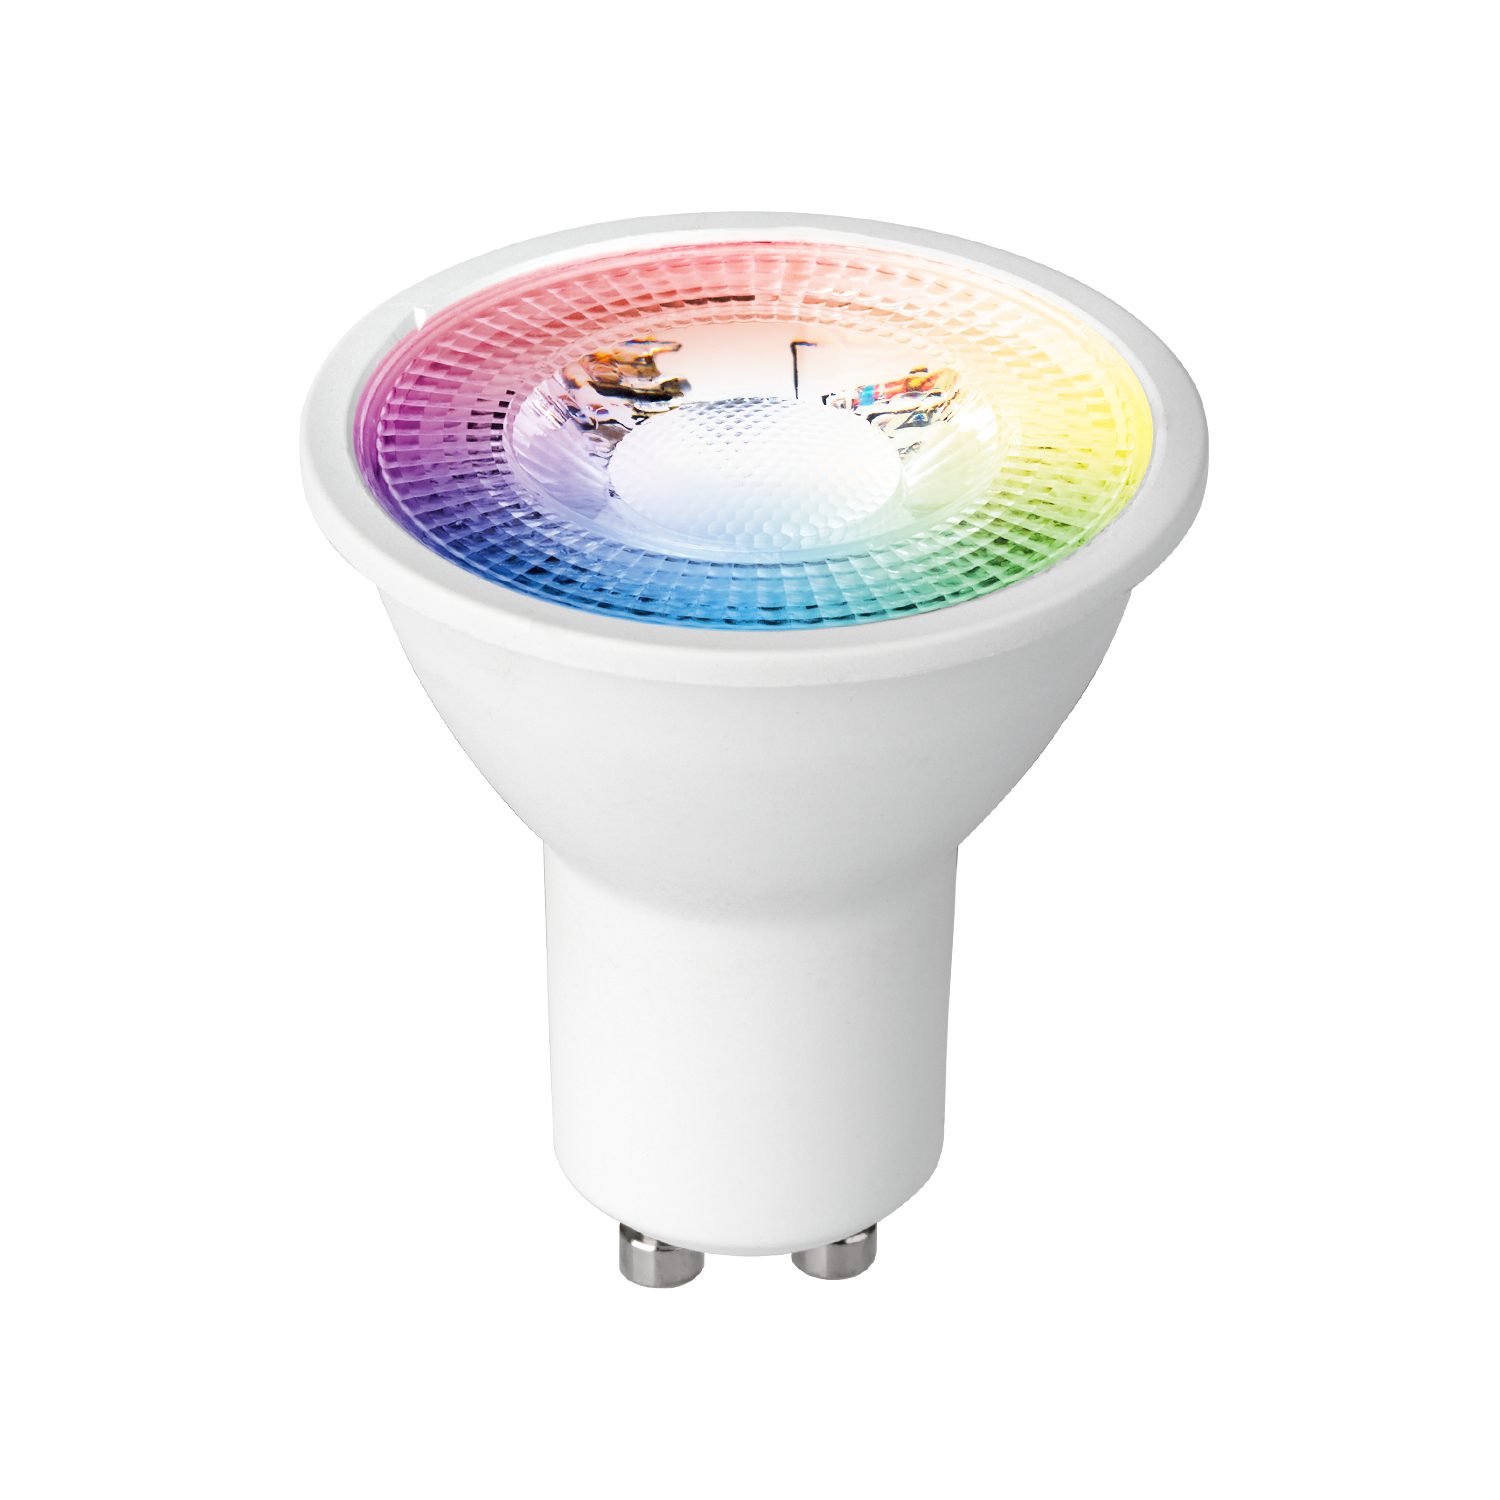 von GU10 Einbaustrahler 3er LED Set weiß - in LEDANDO LED 1 LEDANDO LED mit Einbaustrahler 3W RGB